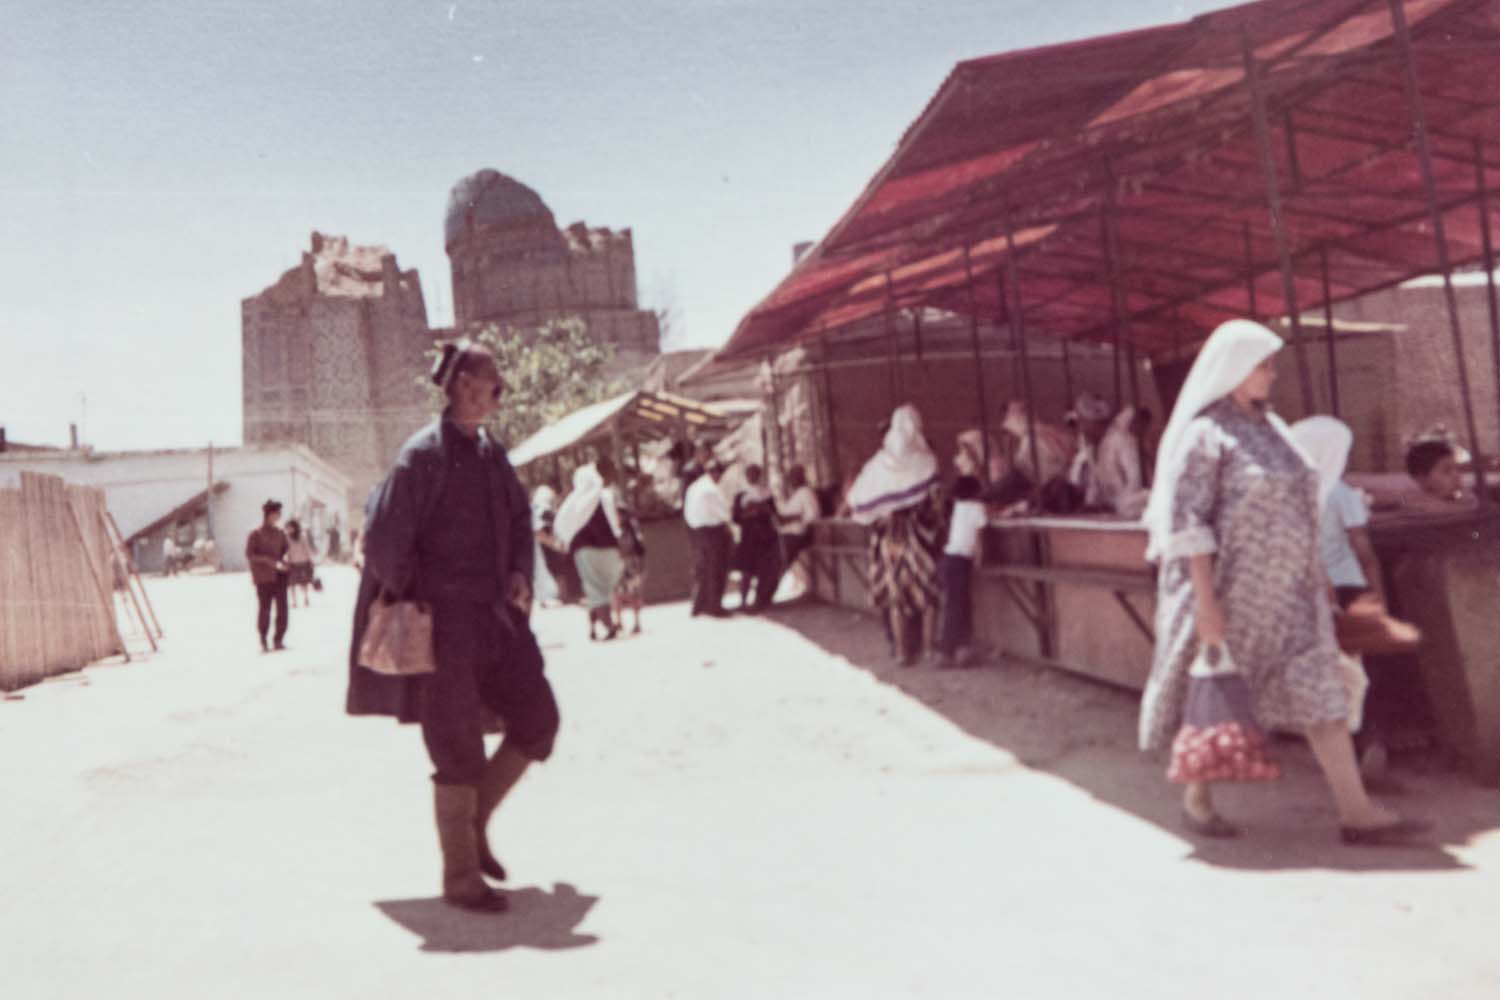 Daily life at a Samarkand bazaar, 1971